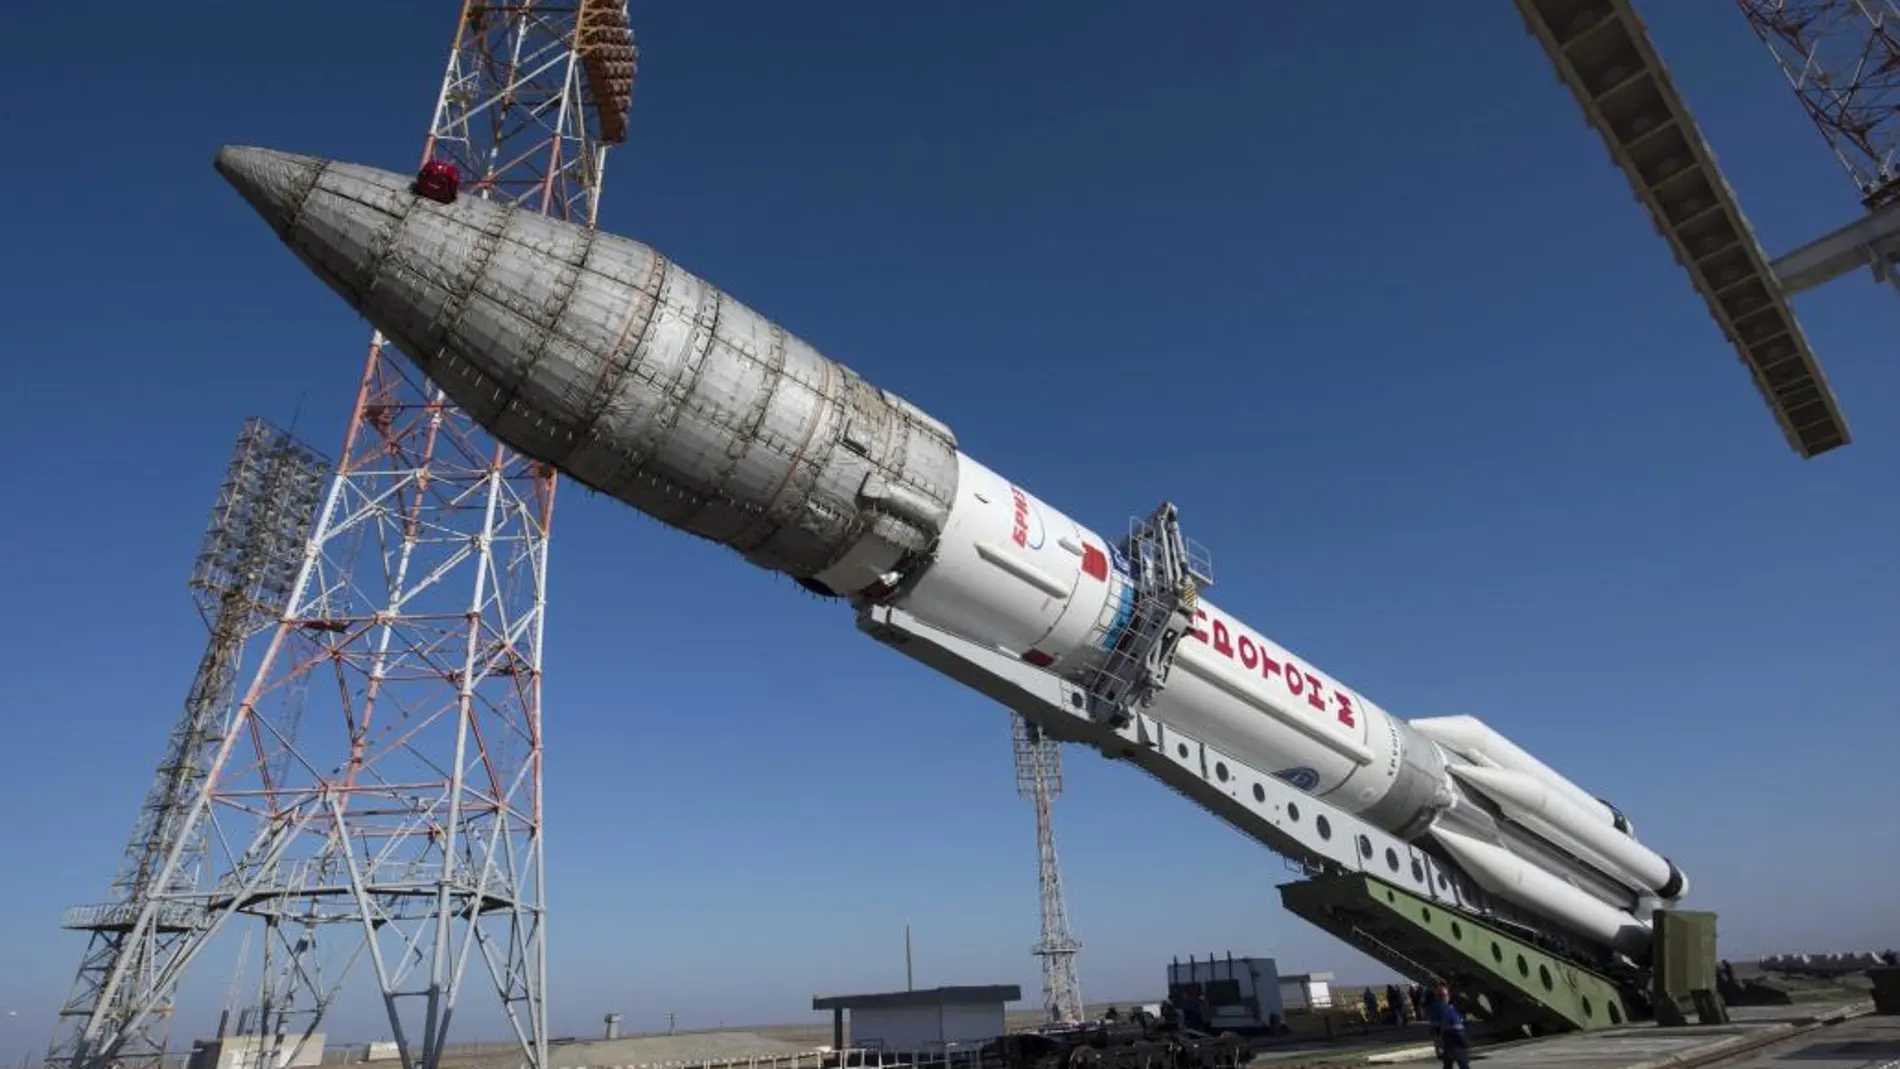 Cohete Protón-M mientras es colocado en la plataforma de lanzamiento en el cosmódromo de Baikonur (Kazajistán) h